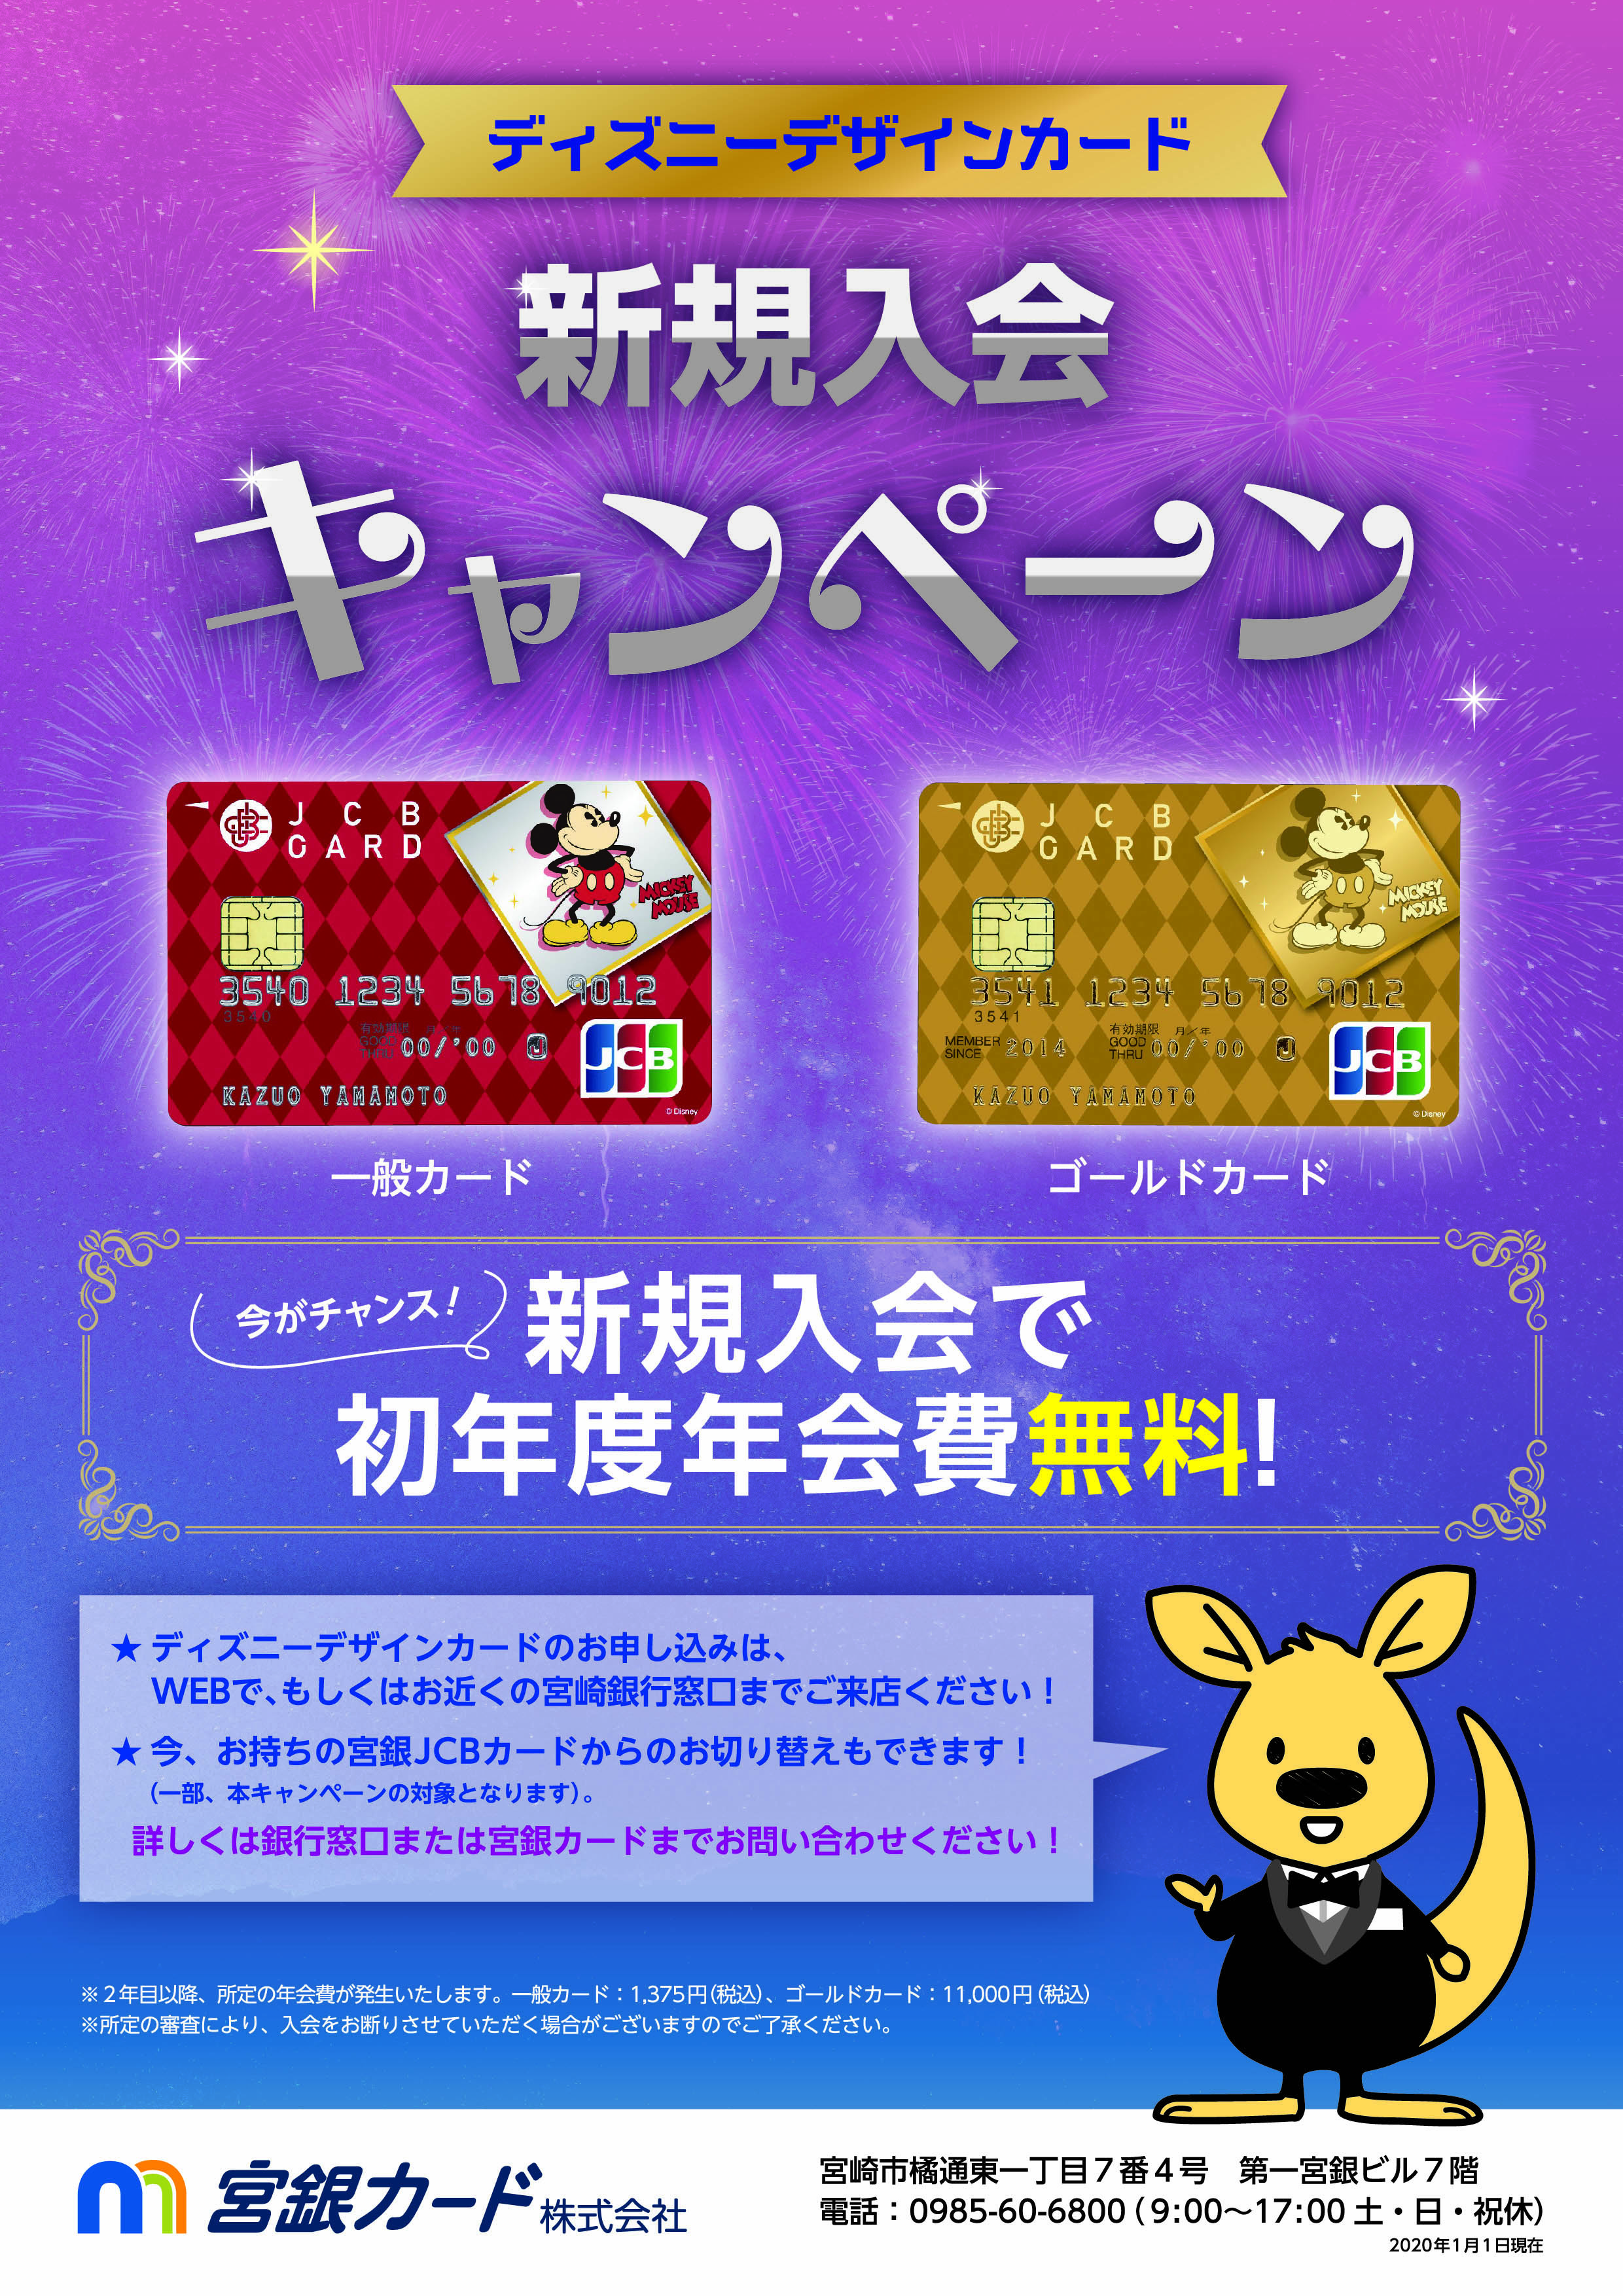 ディズニーデザインカードキャンペーン 宮銀カード株式会社